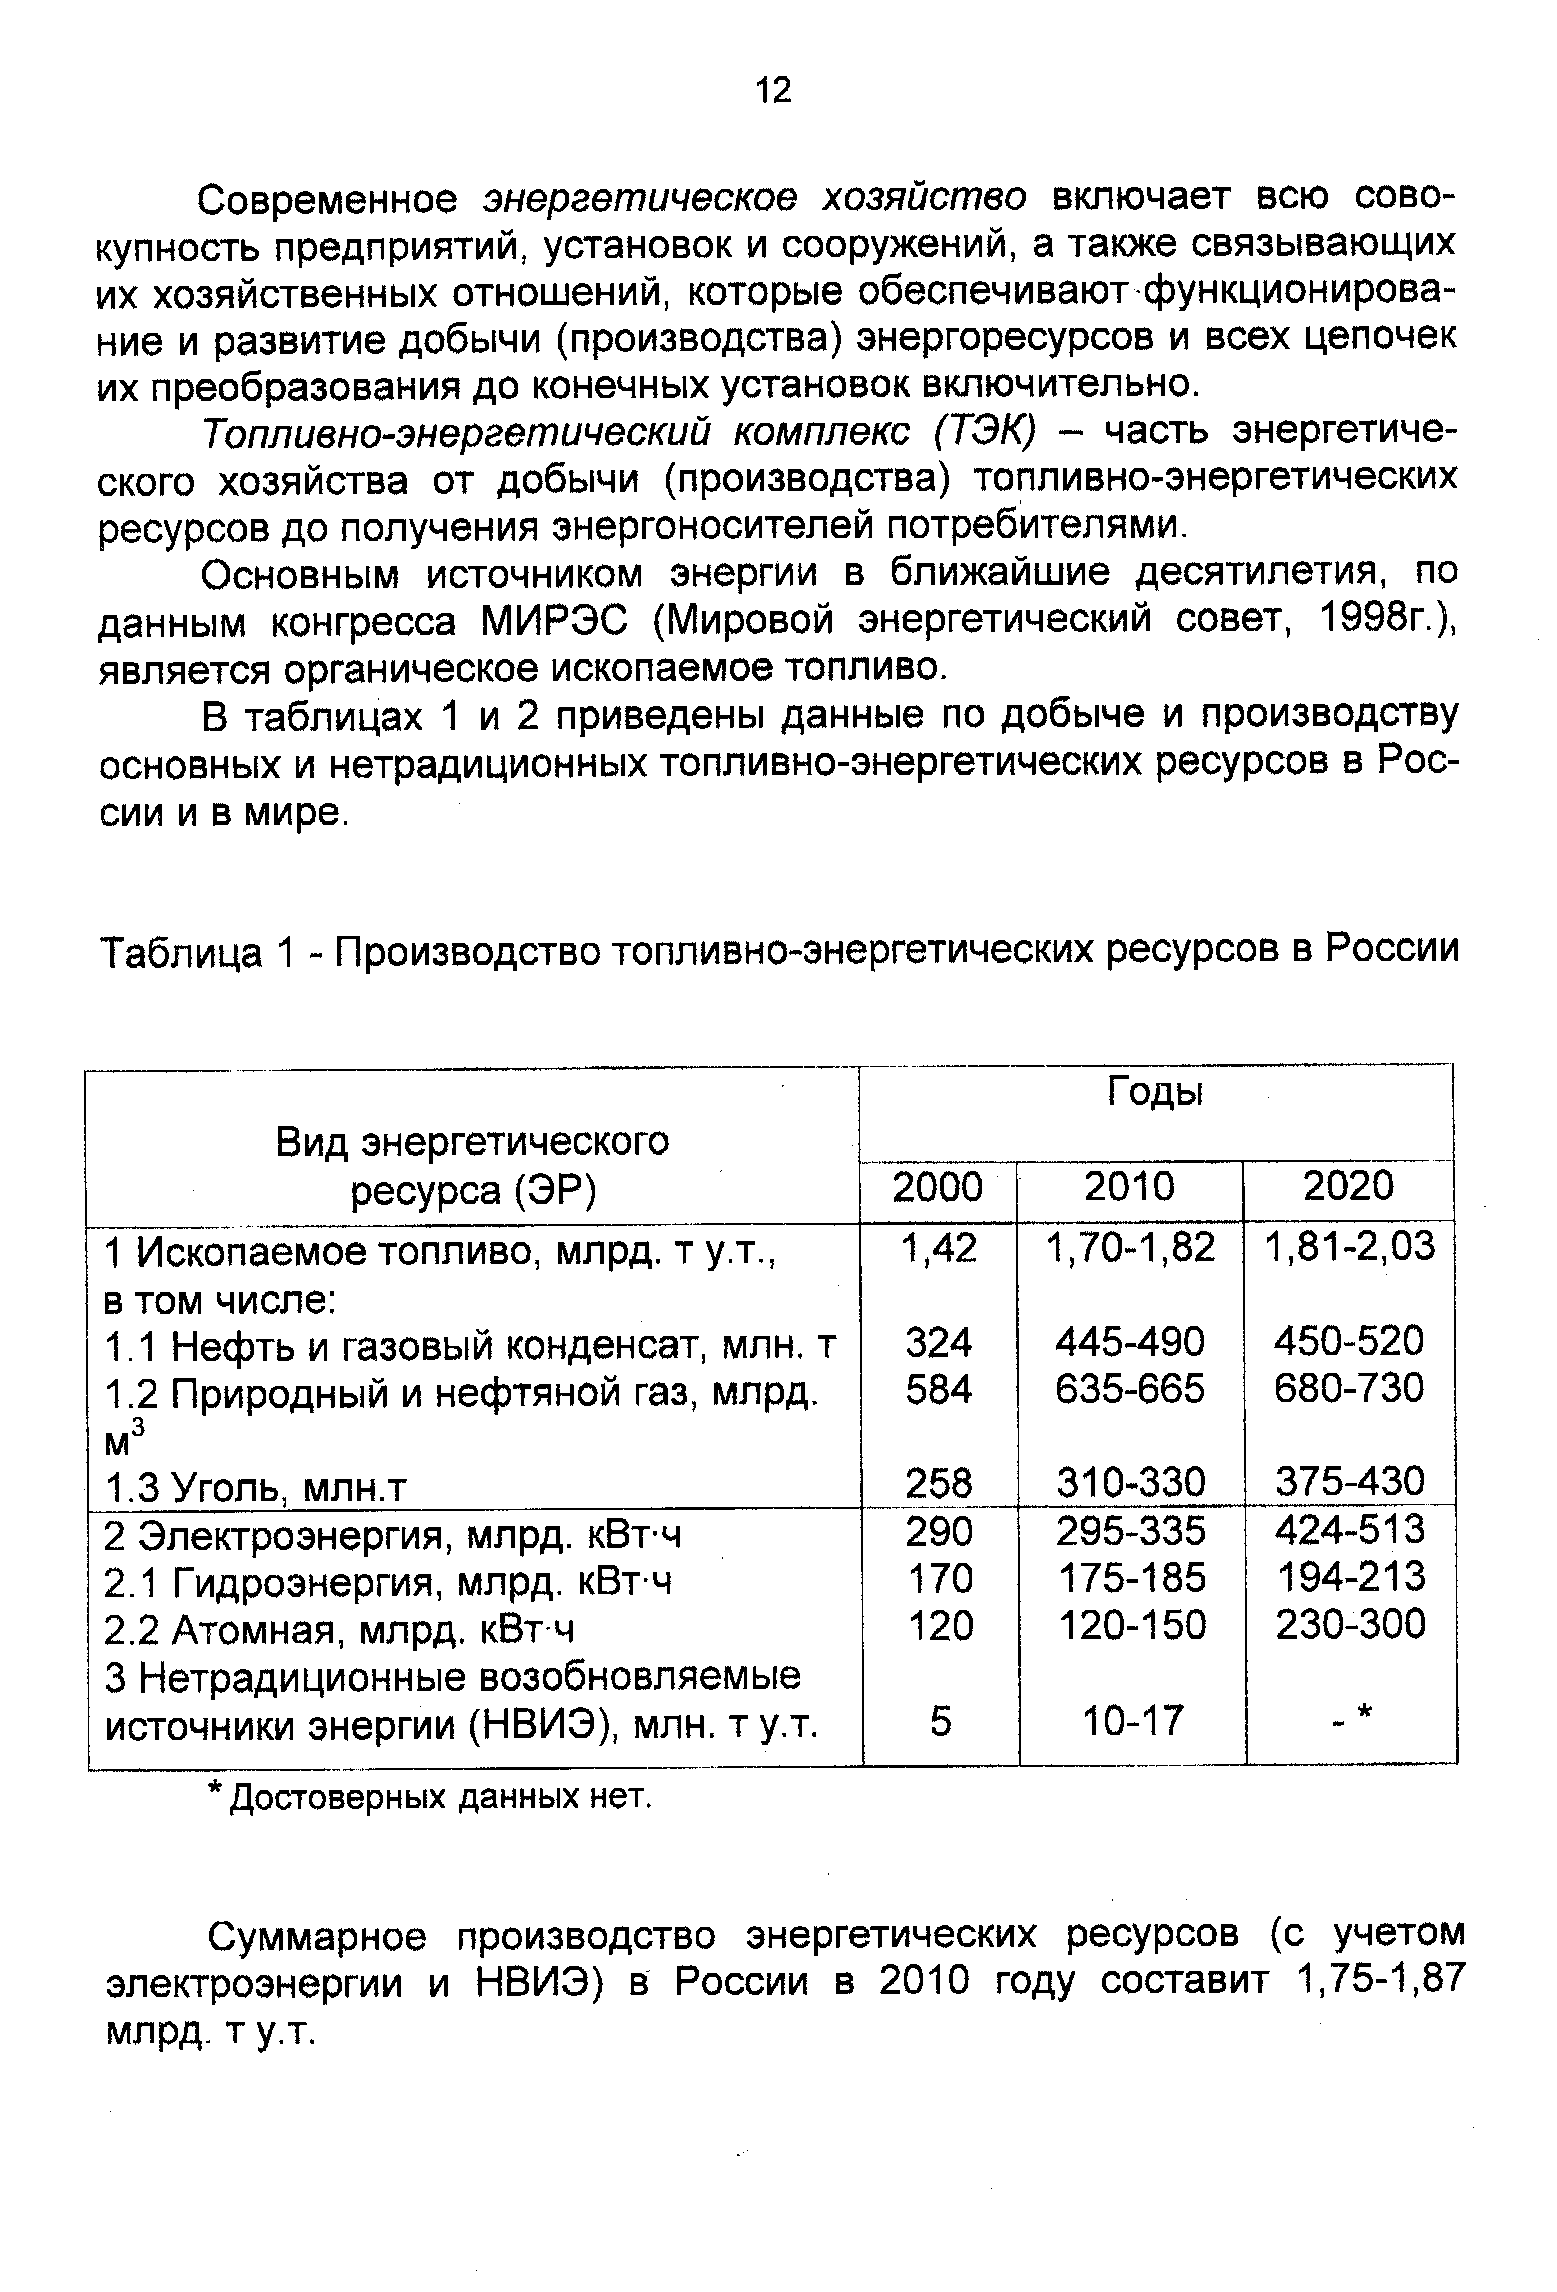 Таблица 1 - Производство топливно-энергетических ресурсов в России
